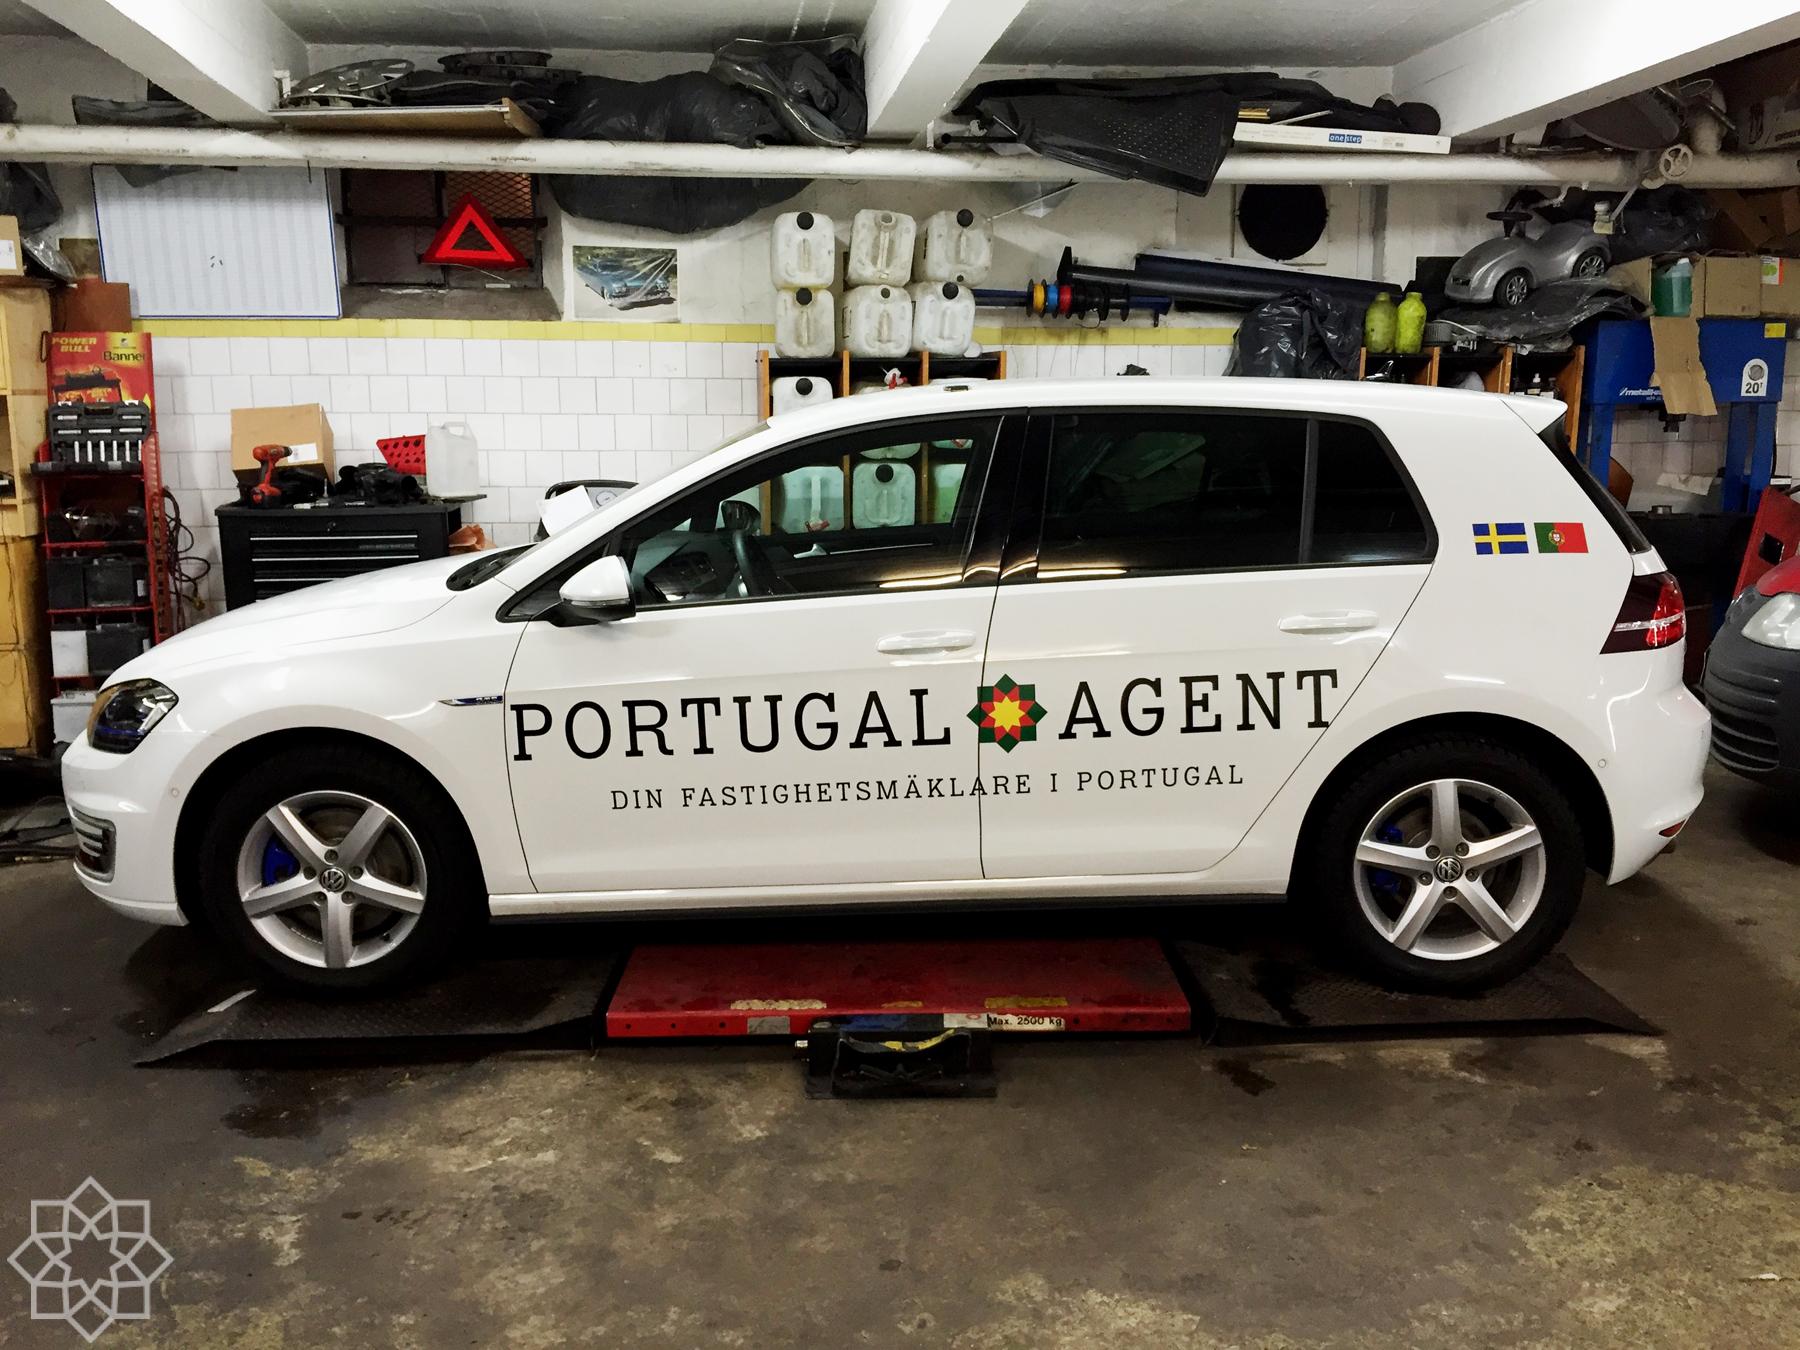 Portugalagents första bil